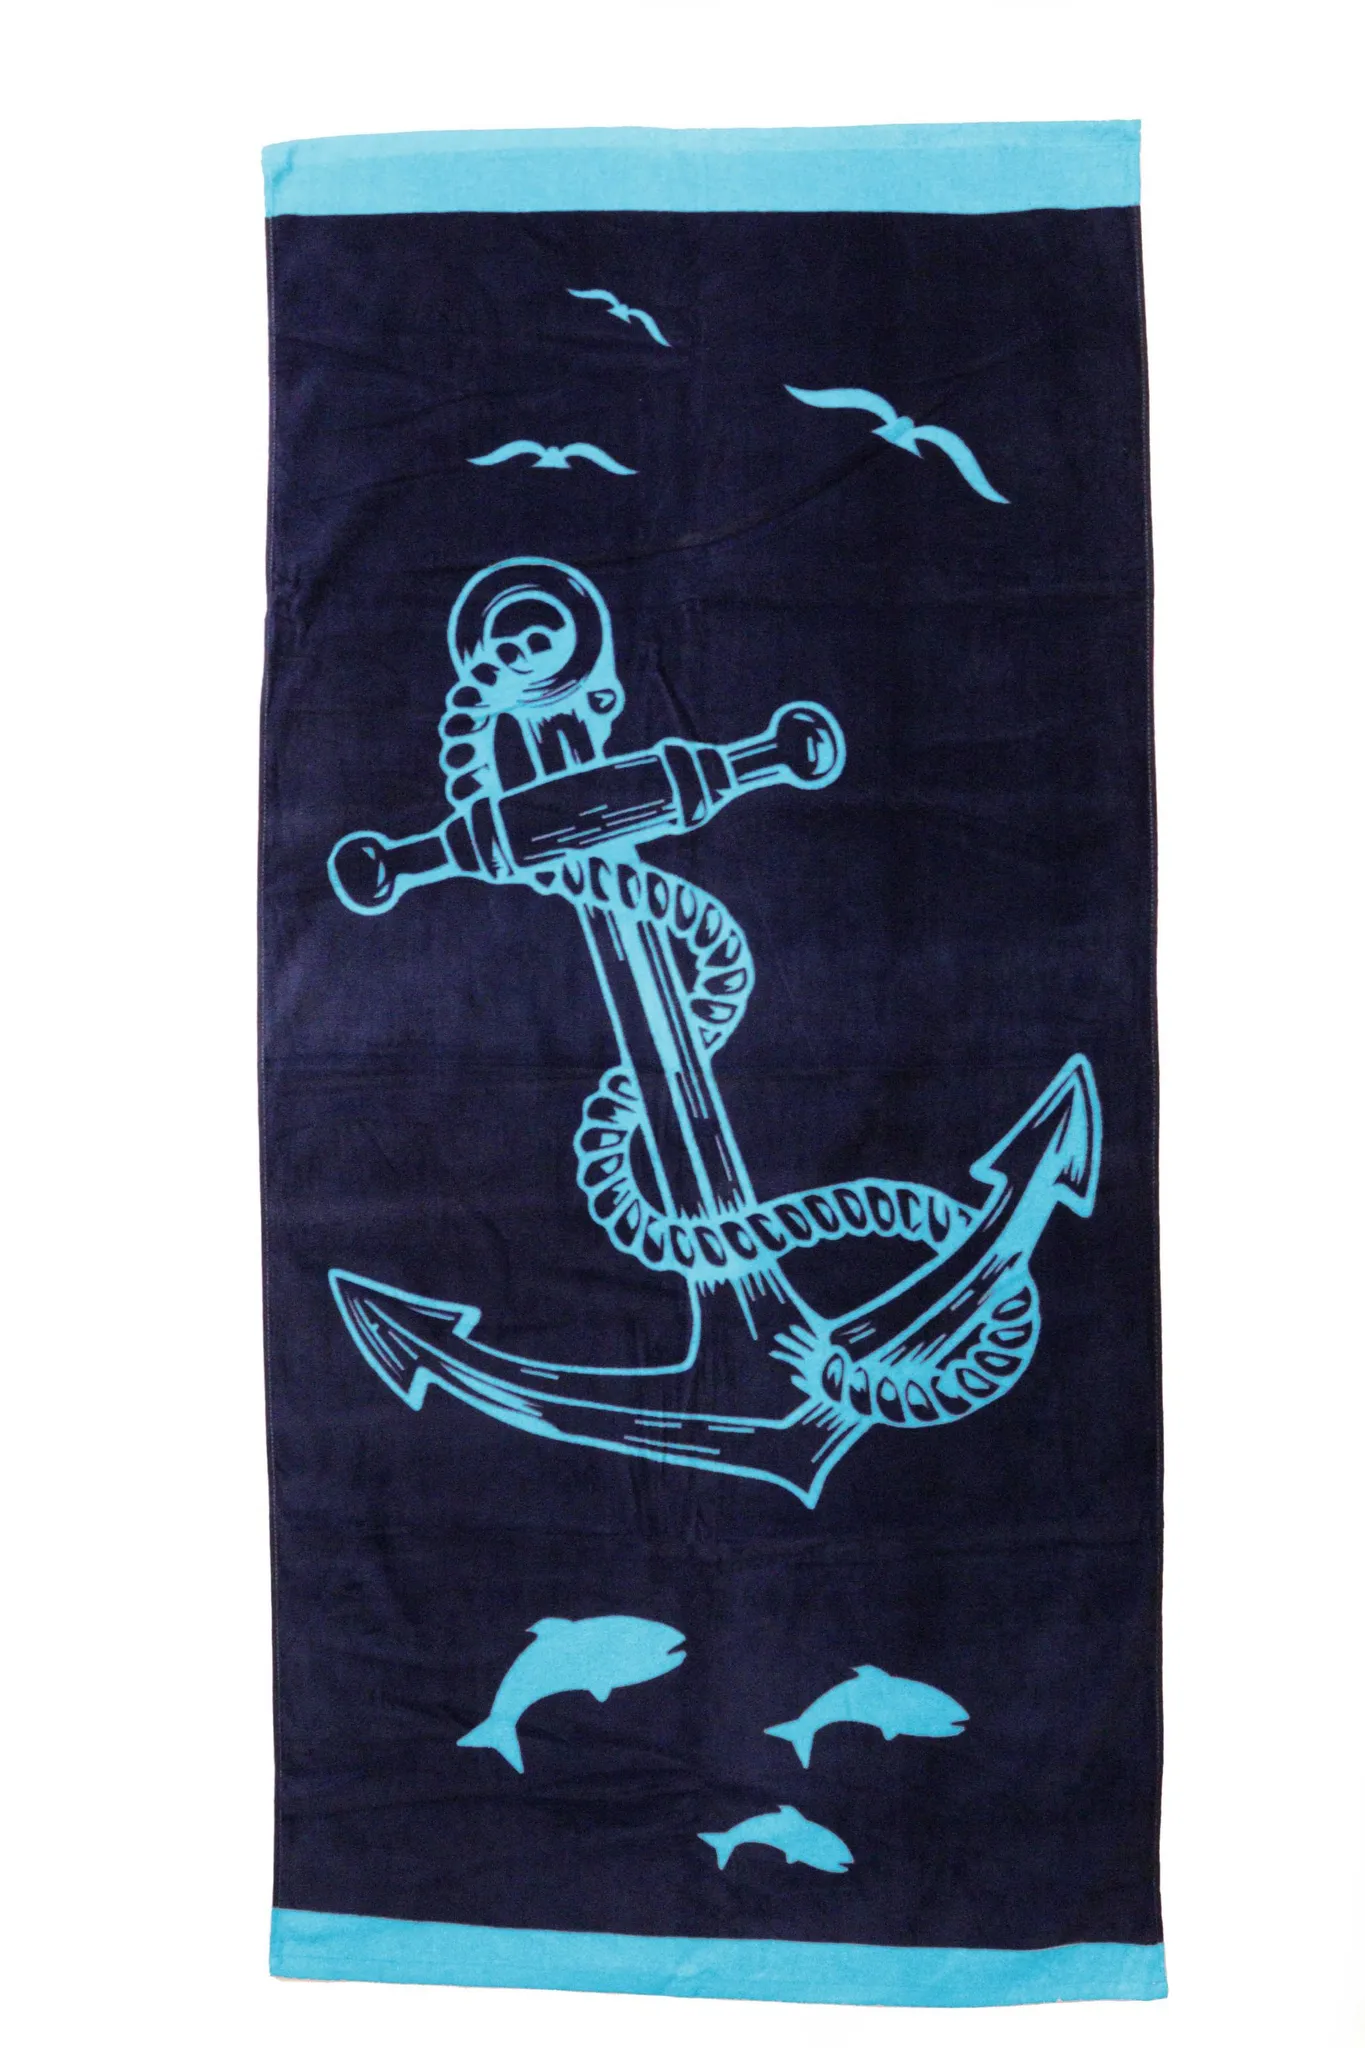 Großes maritimes Handtuch „Anker“ Urlaub 100% Velours türkis, 75*160cm Baumwolle in Badetuch Frottee und schwarz Strandtuch